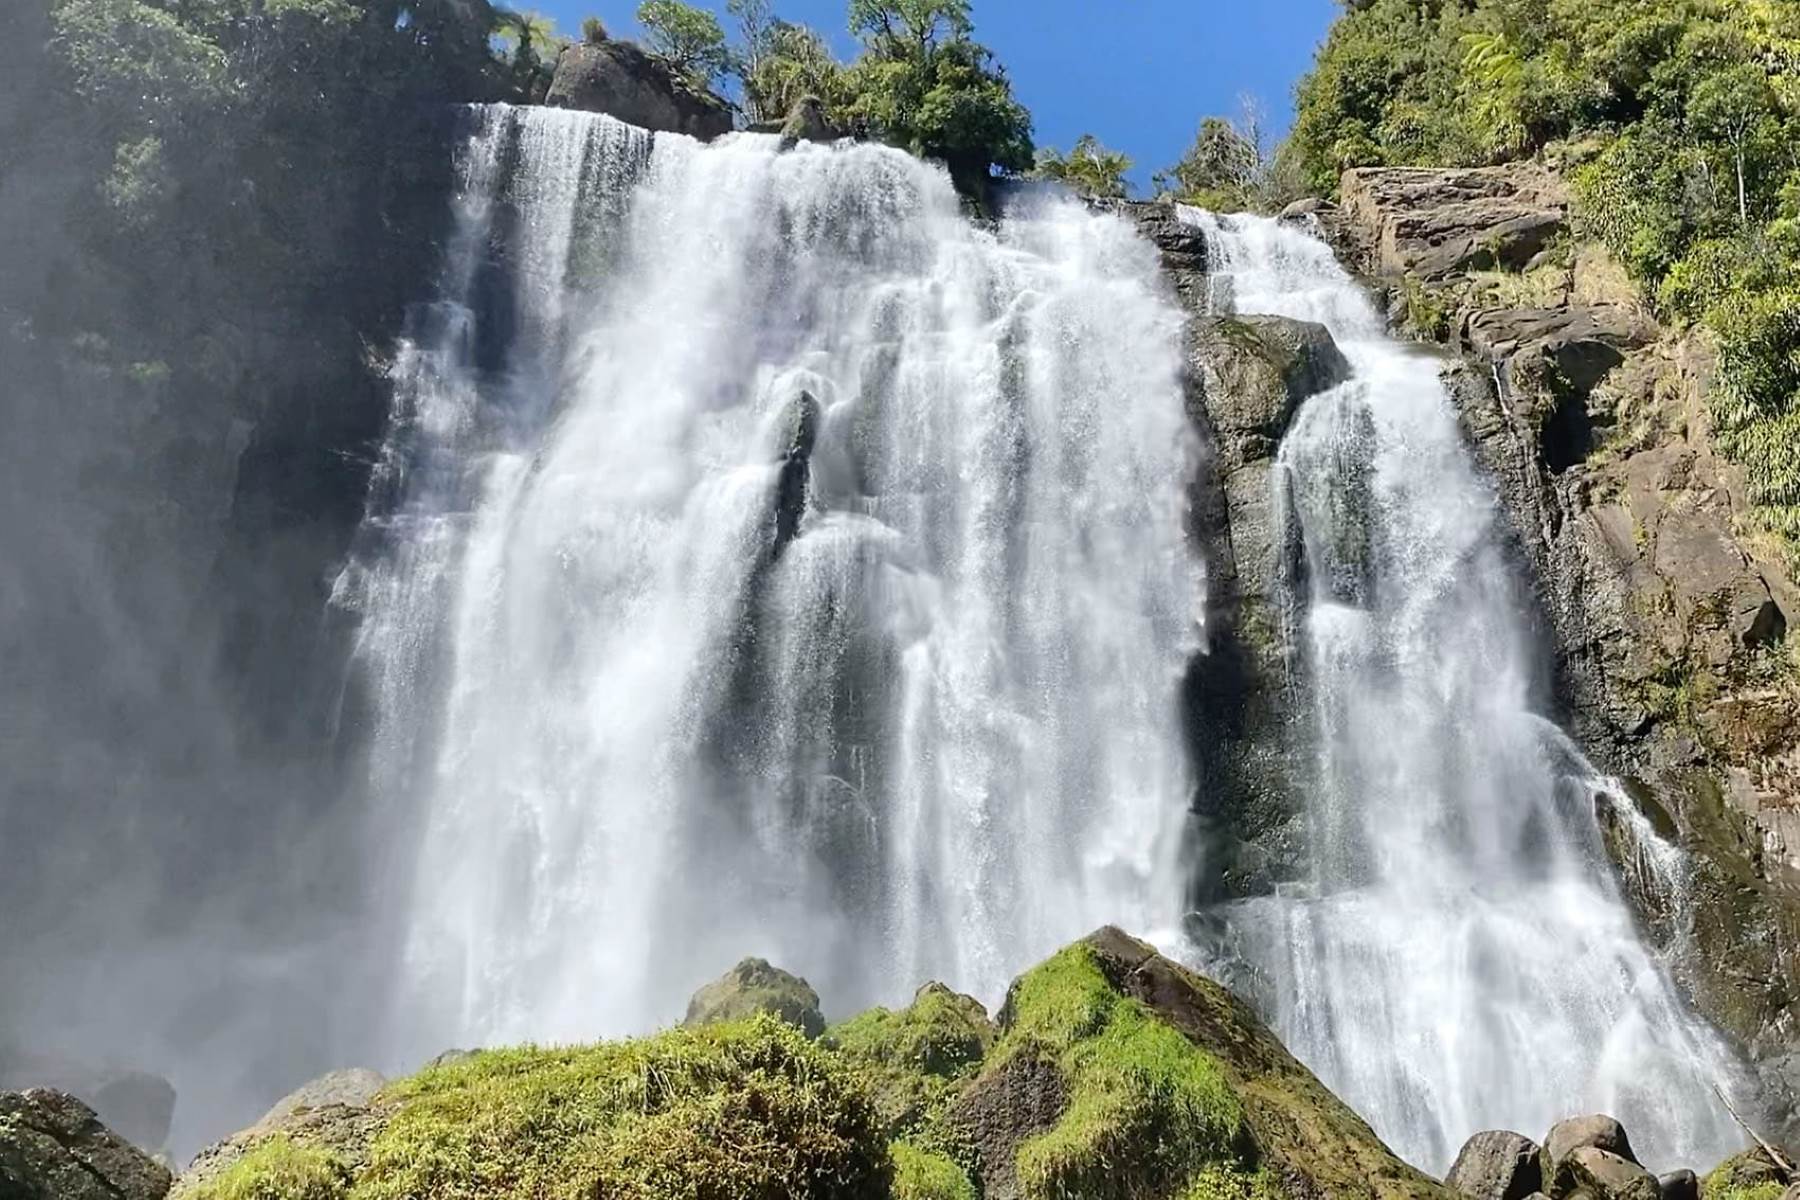 16-astonishing-facts-about-marokopa-falls